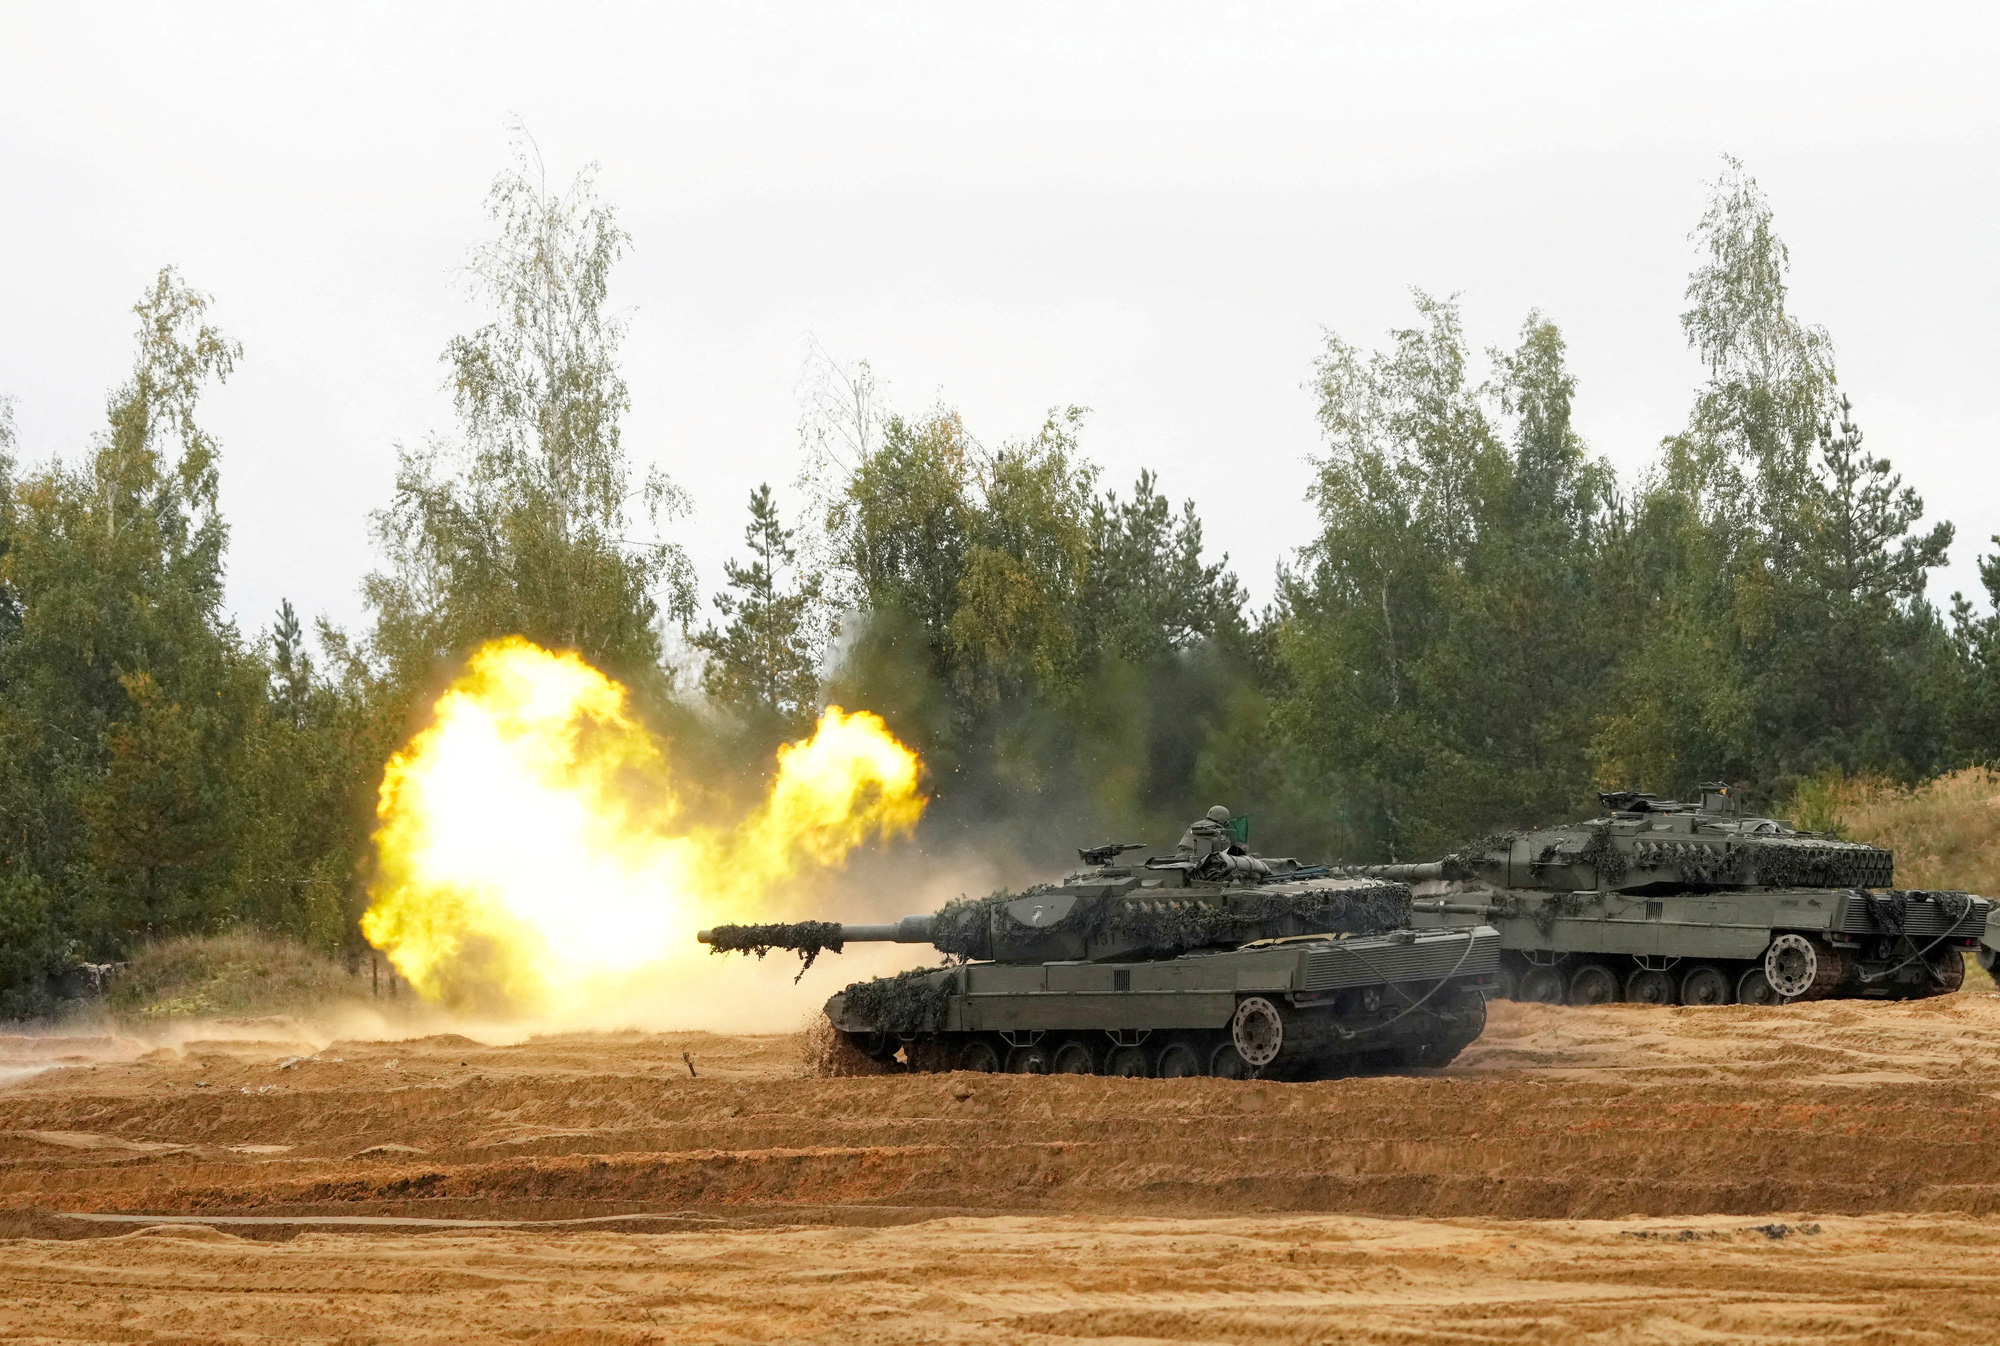 El Pais: Spain sent Leopard tanks to Ukraine - Photo 1.